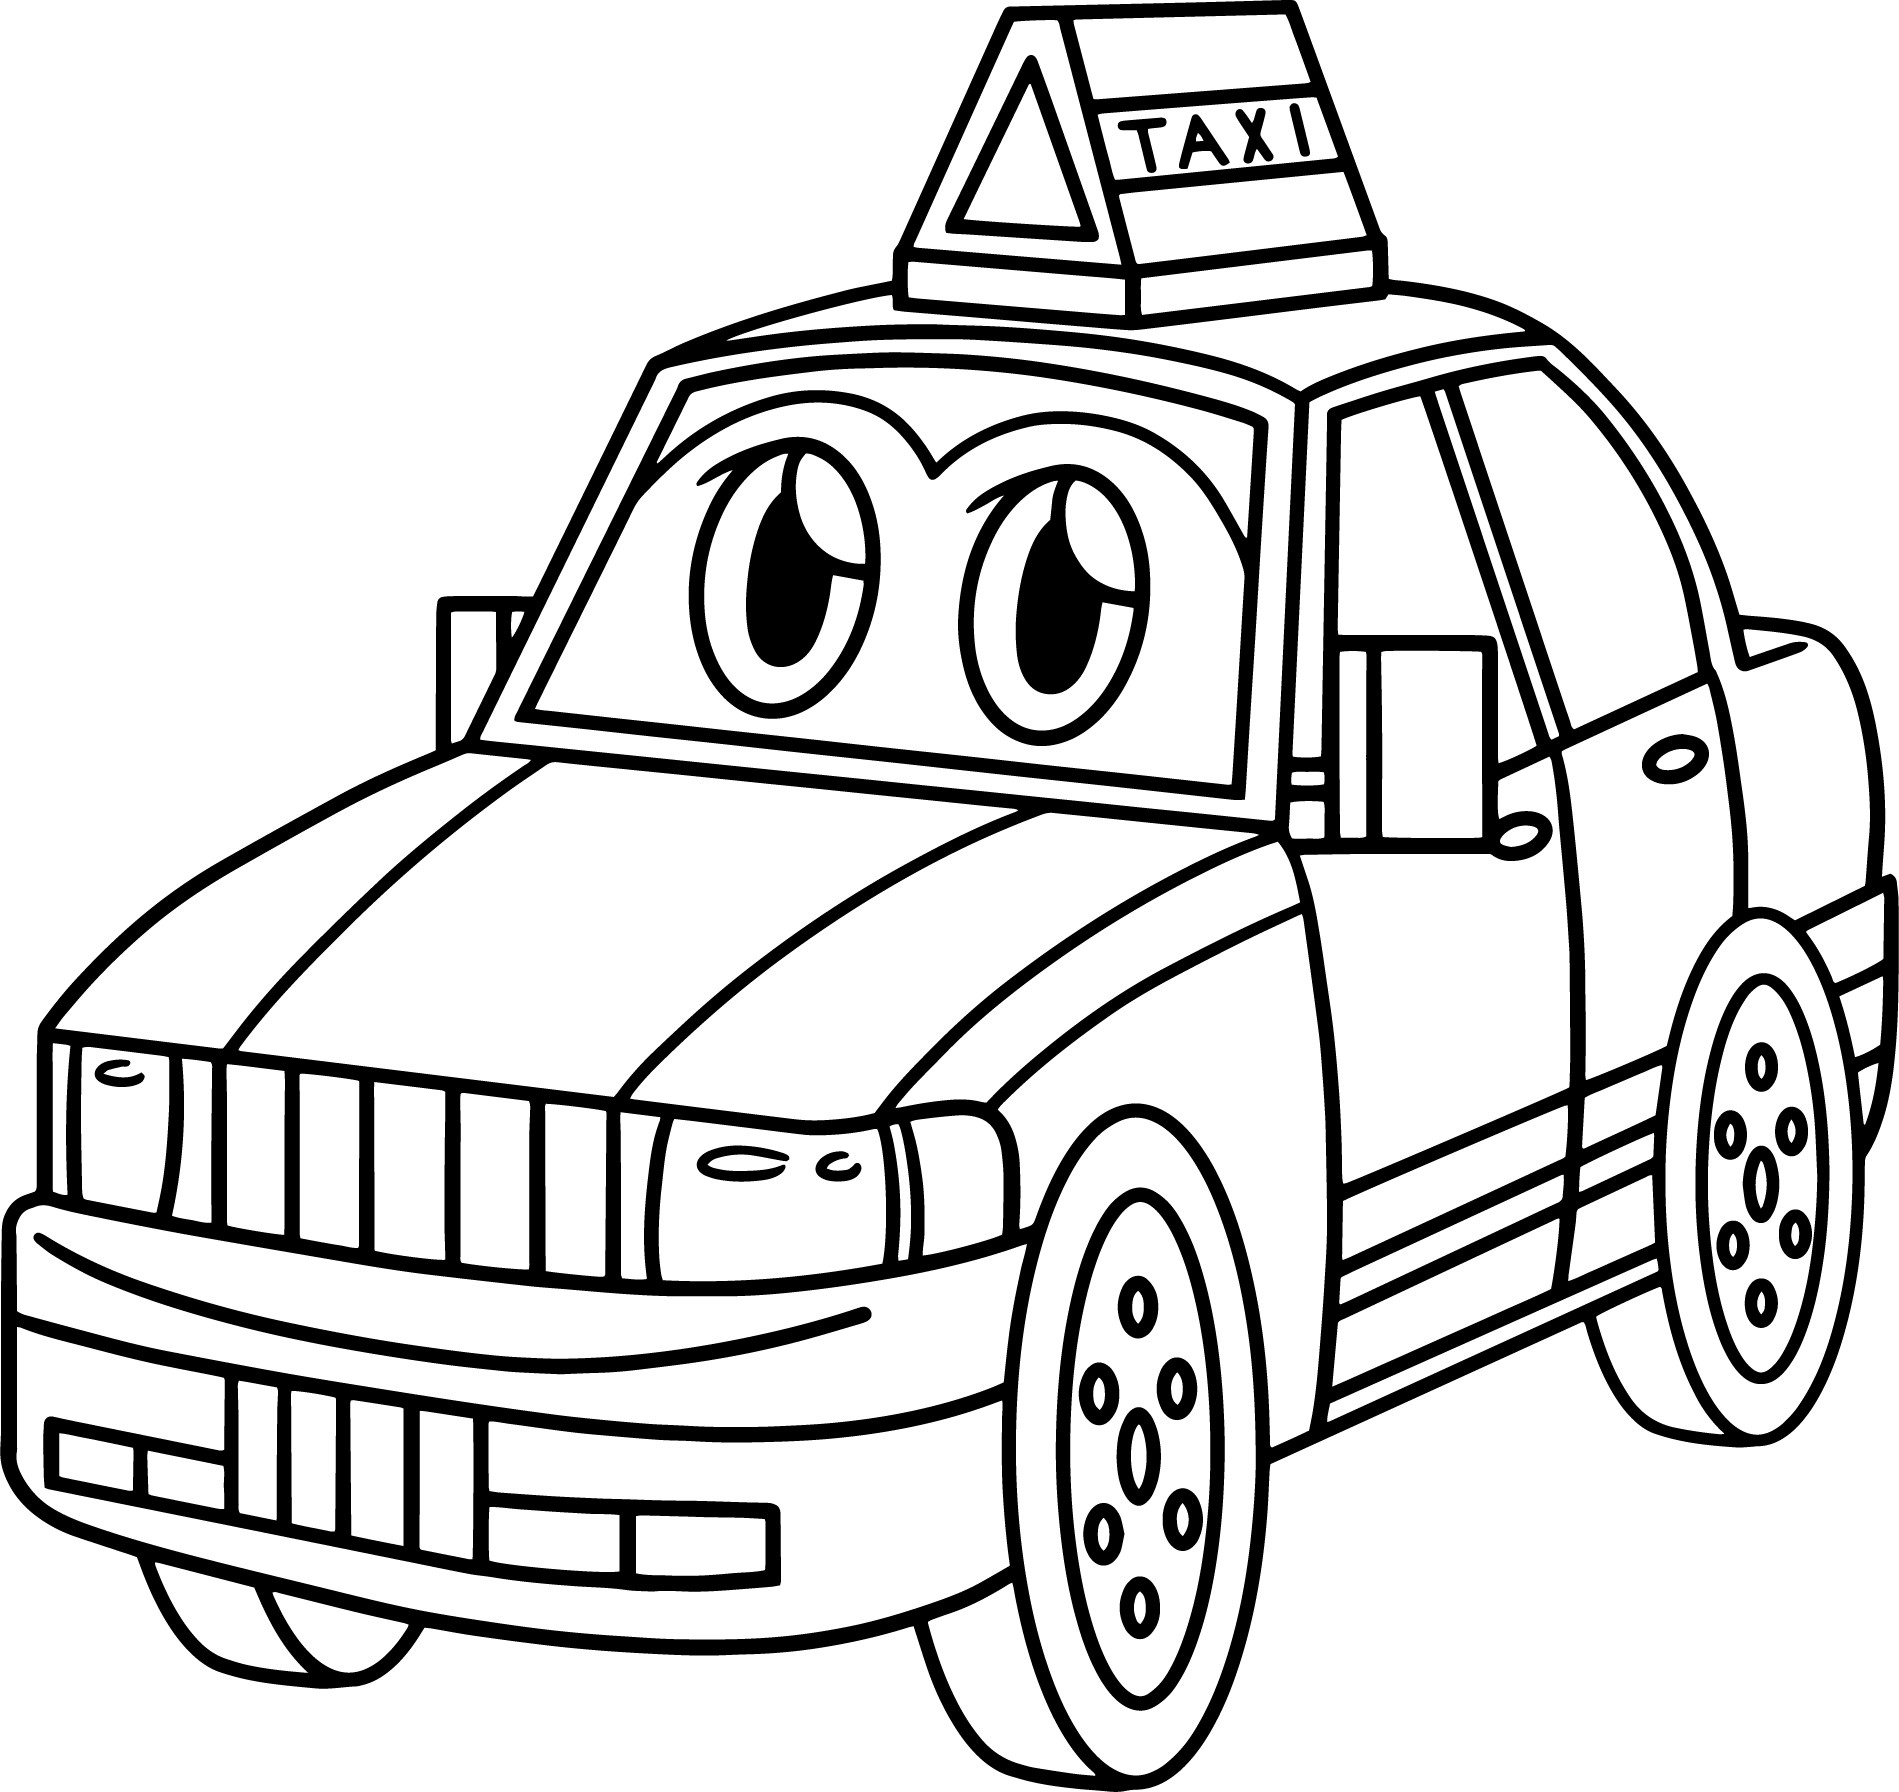 Раскраска для детей: легковая машина такси с лицом